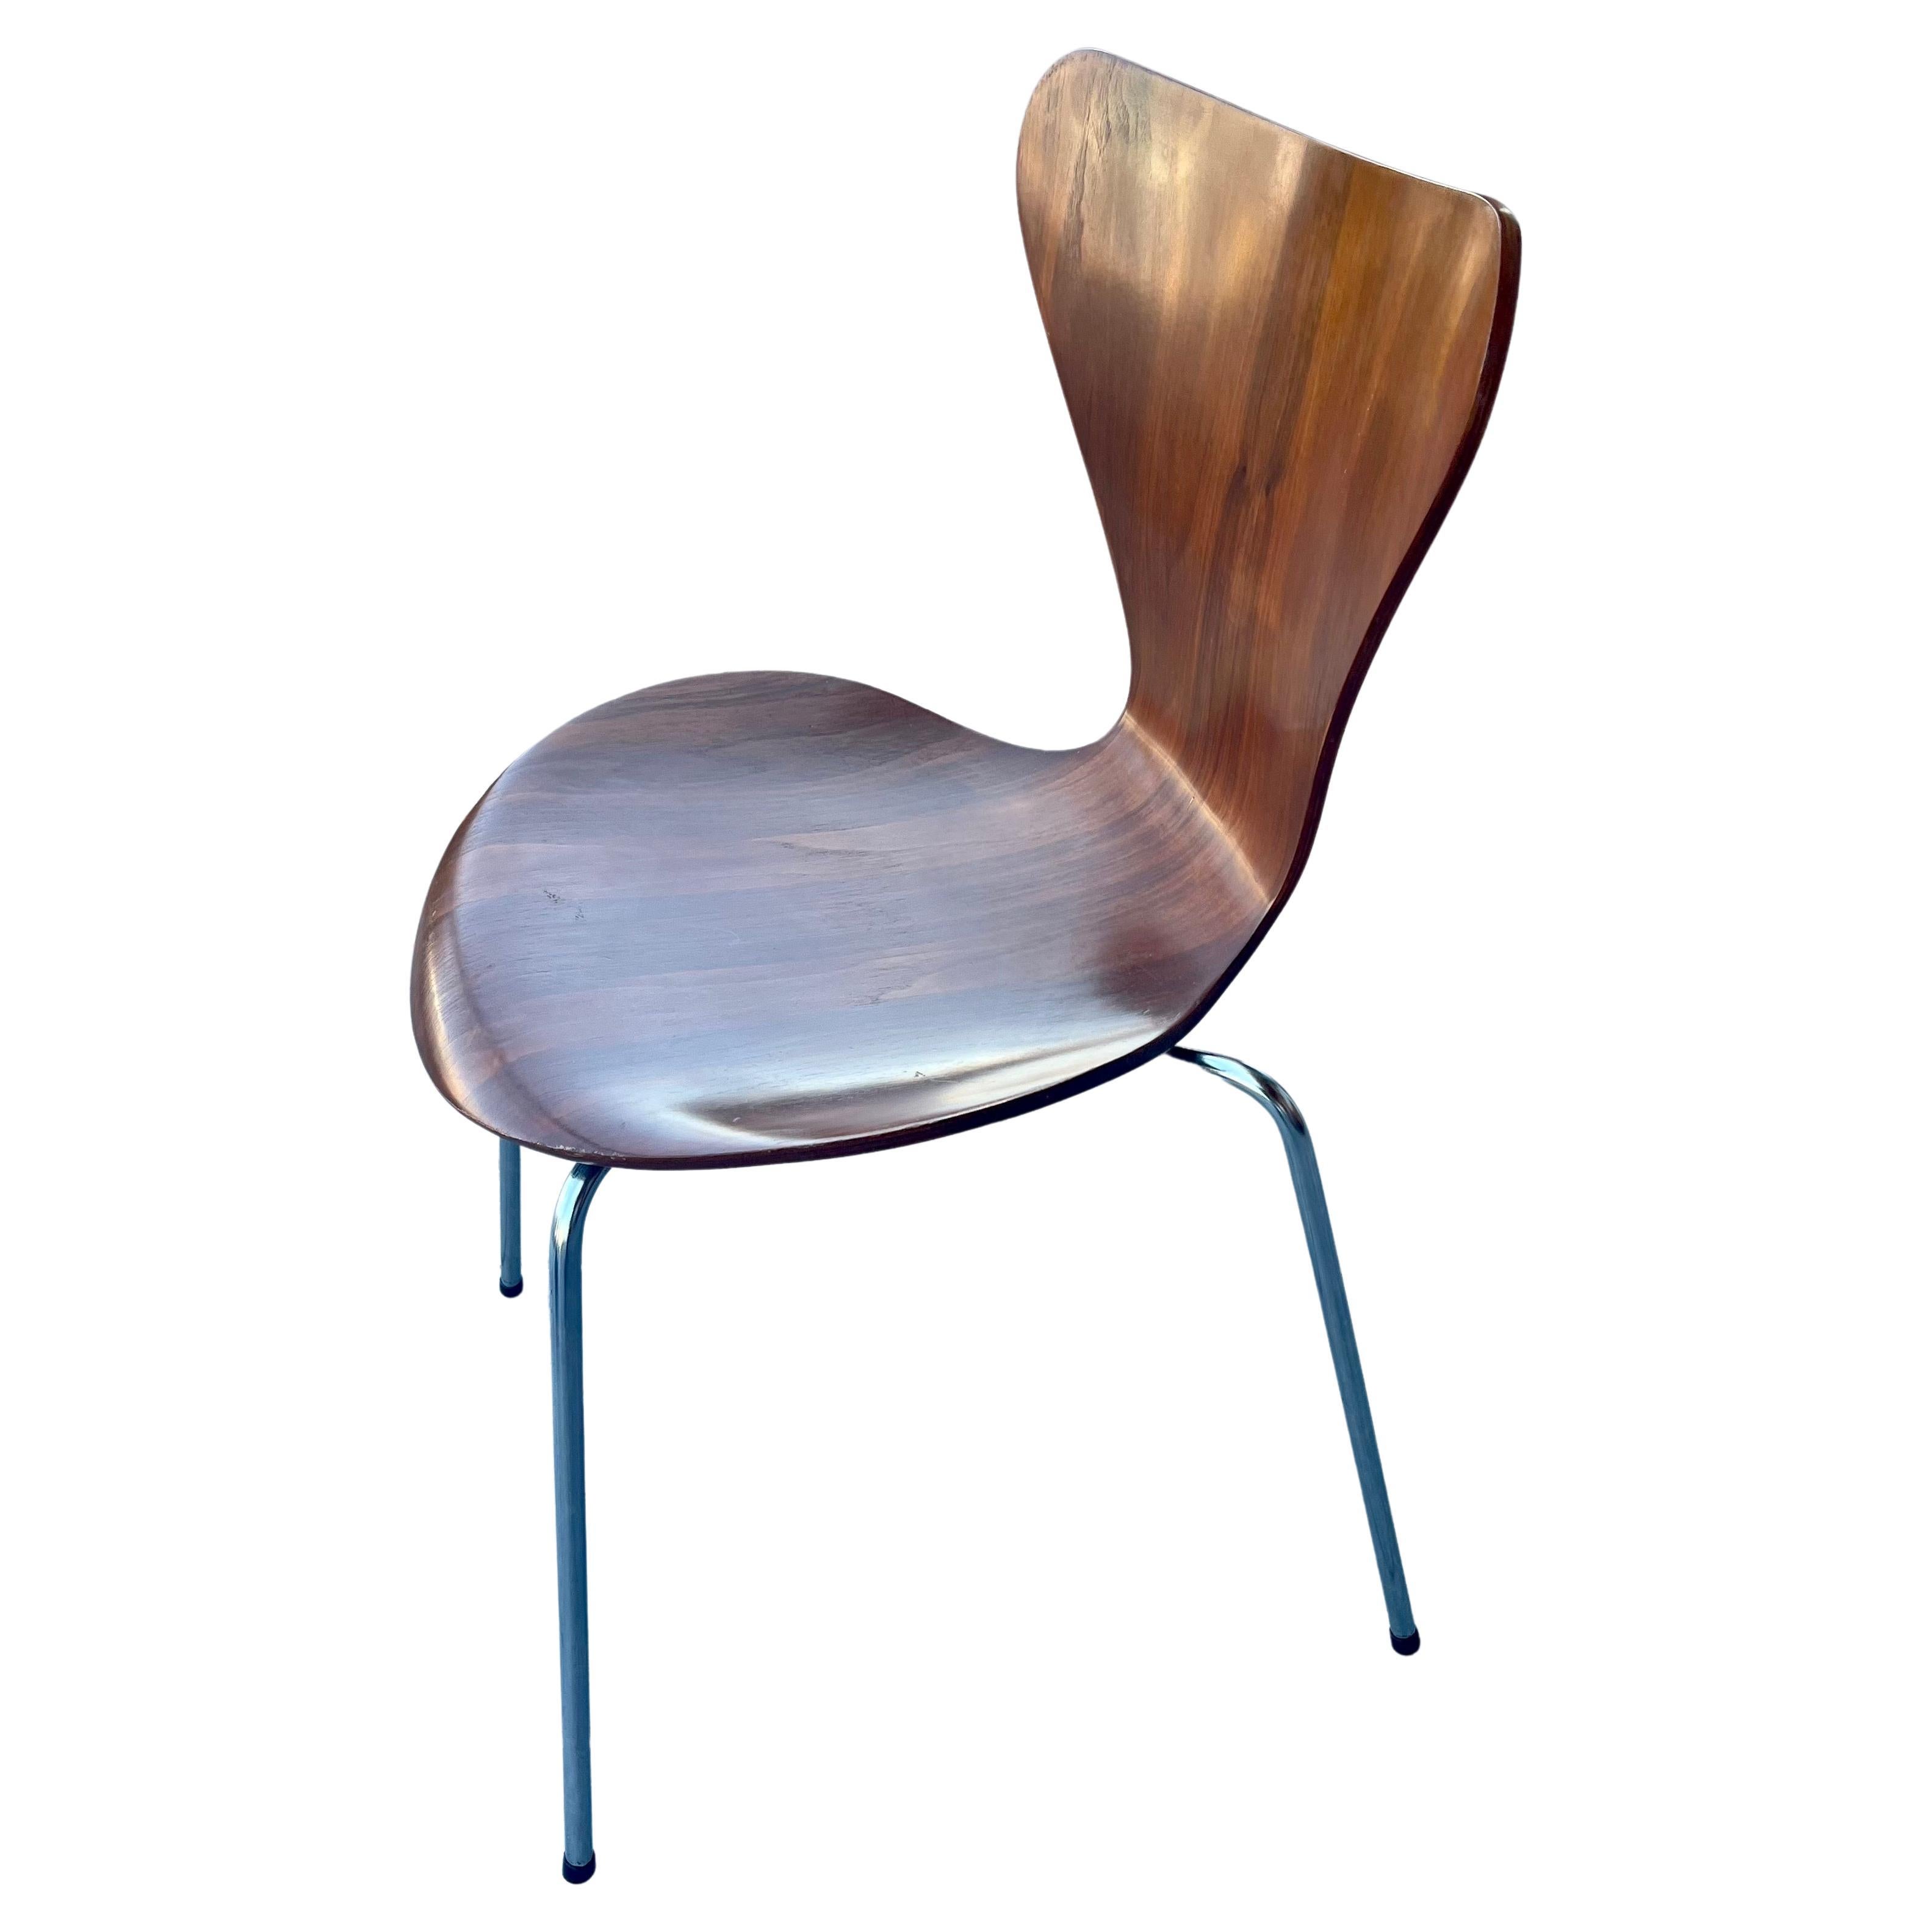 Danish Modern Series 7 Chair by Arne Jacobsen Dark Teak Fritz Hansen In Good Condition For Sale In San Diego, CA